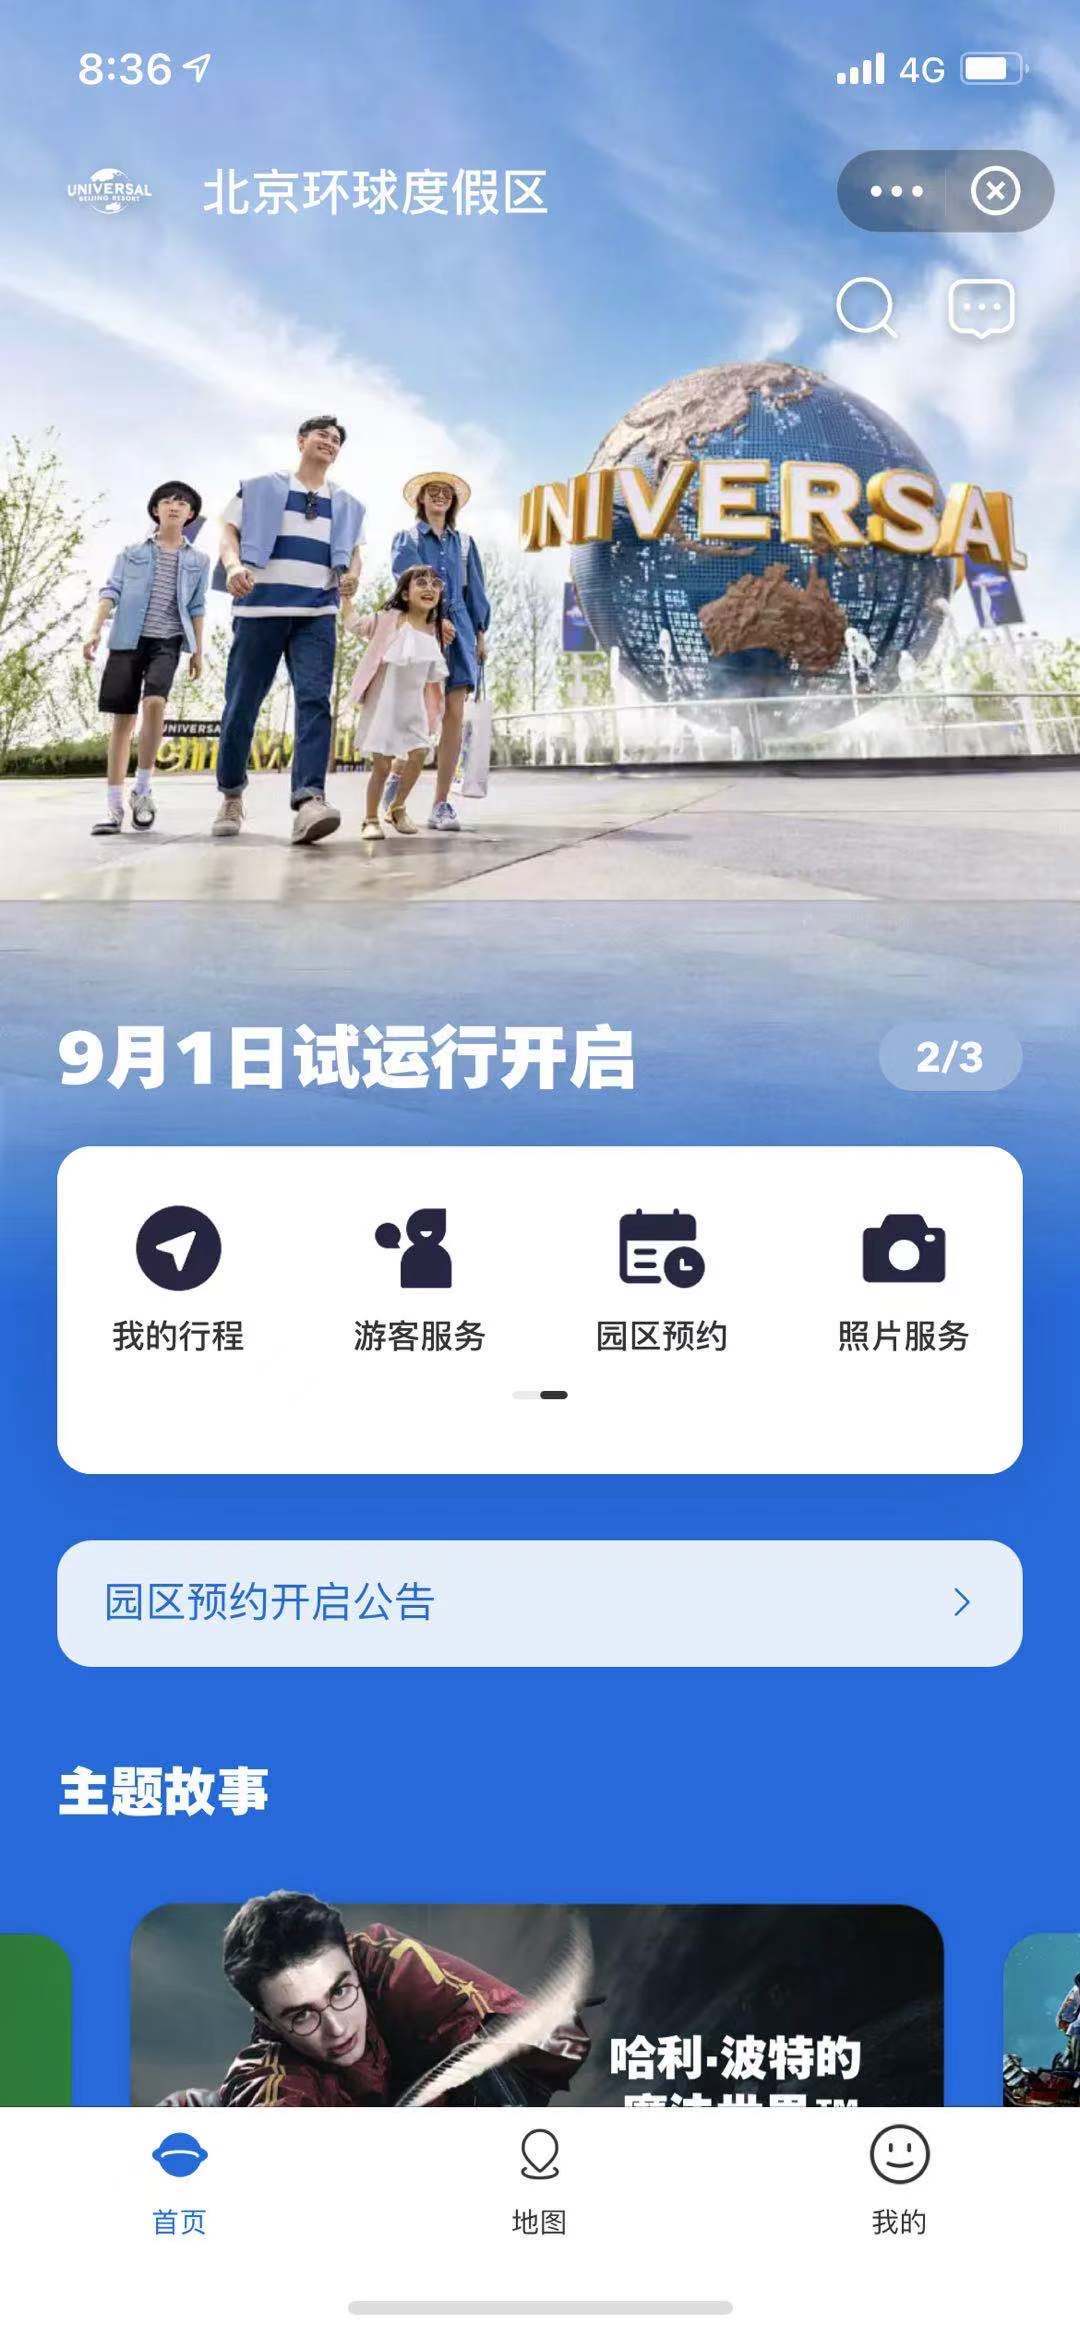 北京环球度假区支付宝小程序上线，持票可预约入园